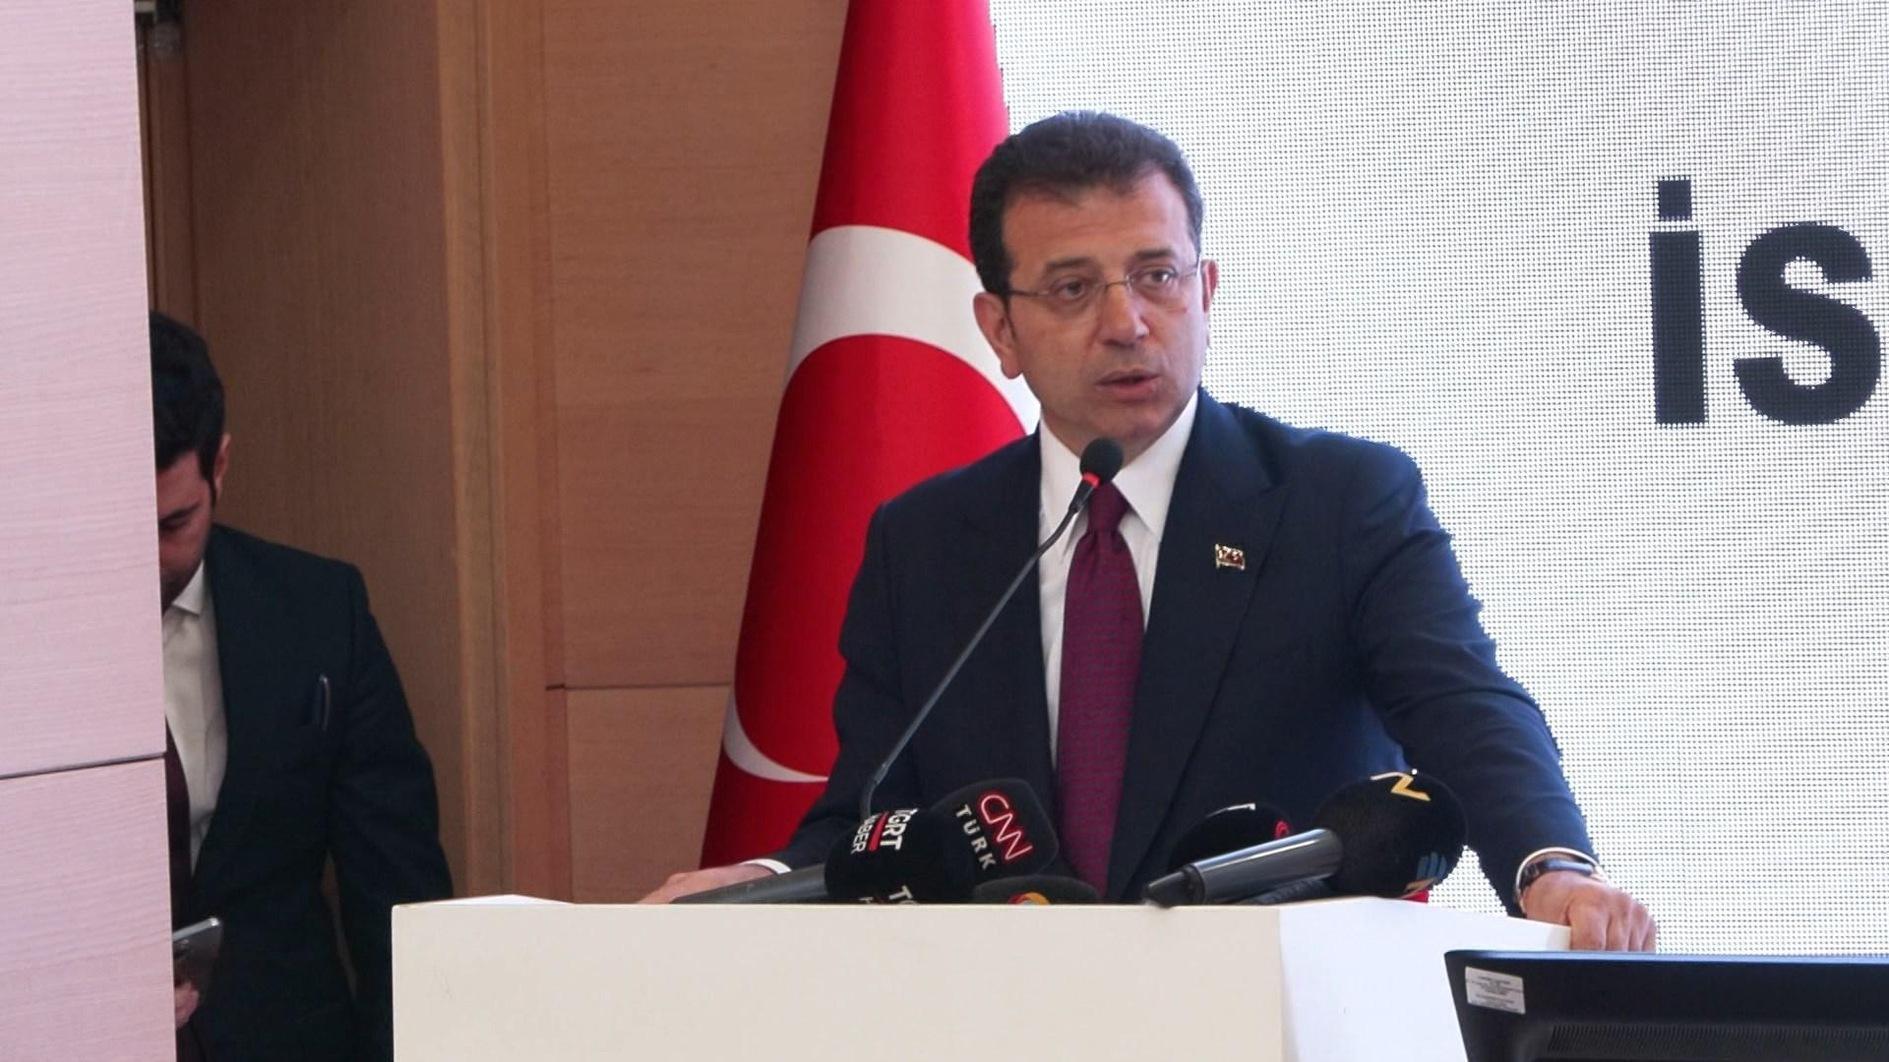 İmamoğlu roept op tot samenwerking met de regering in de tweede termijn